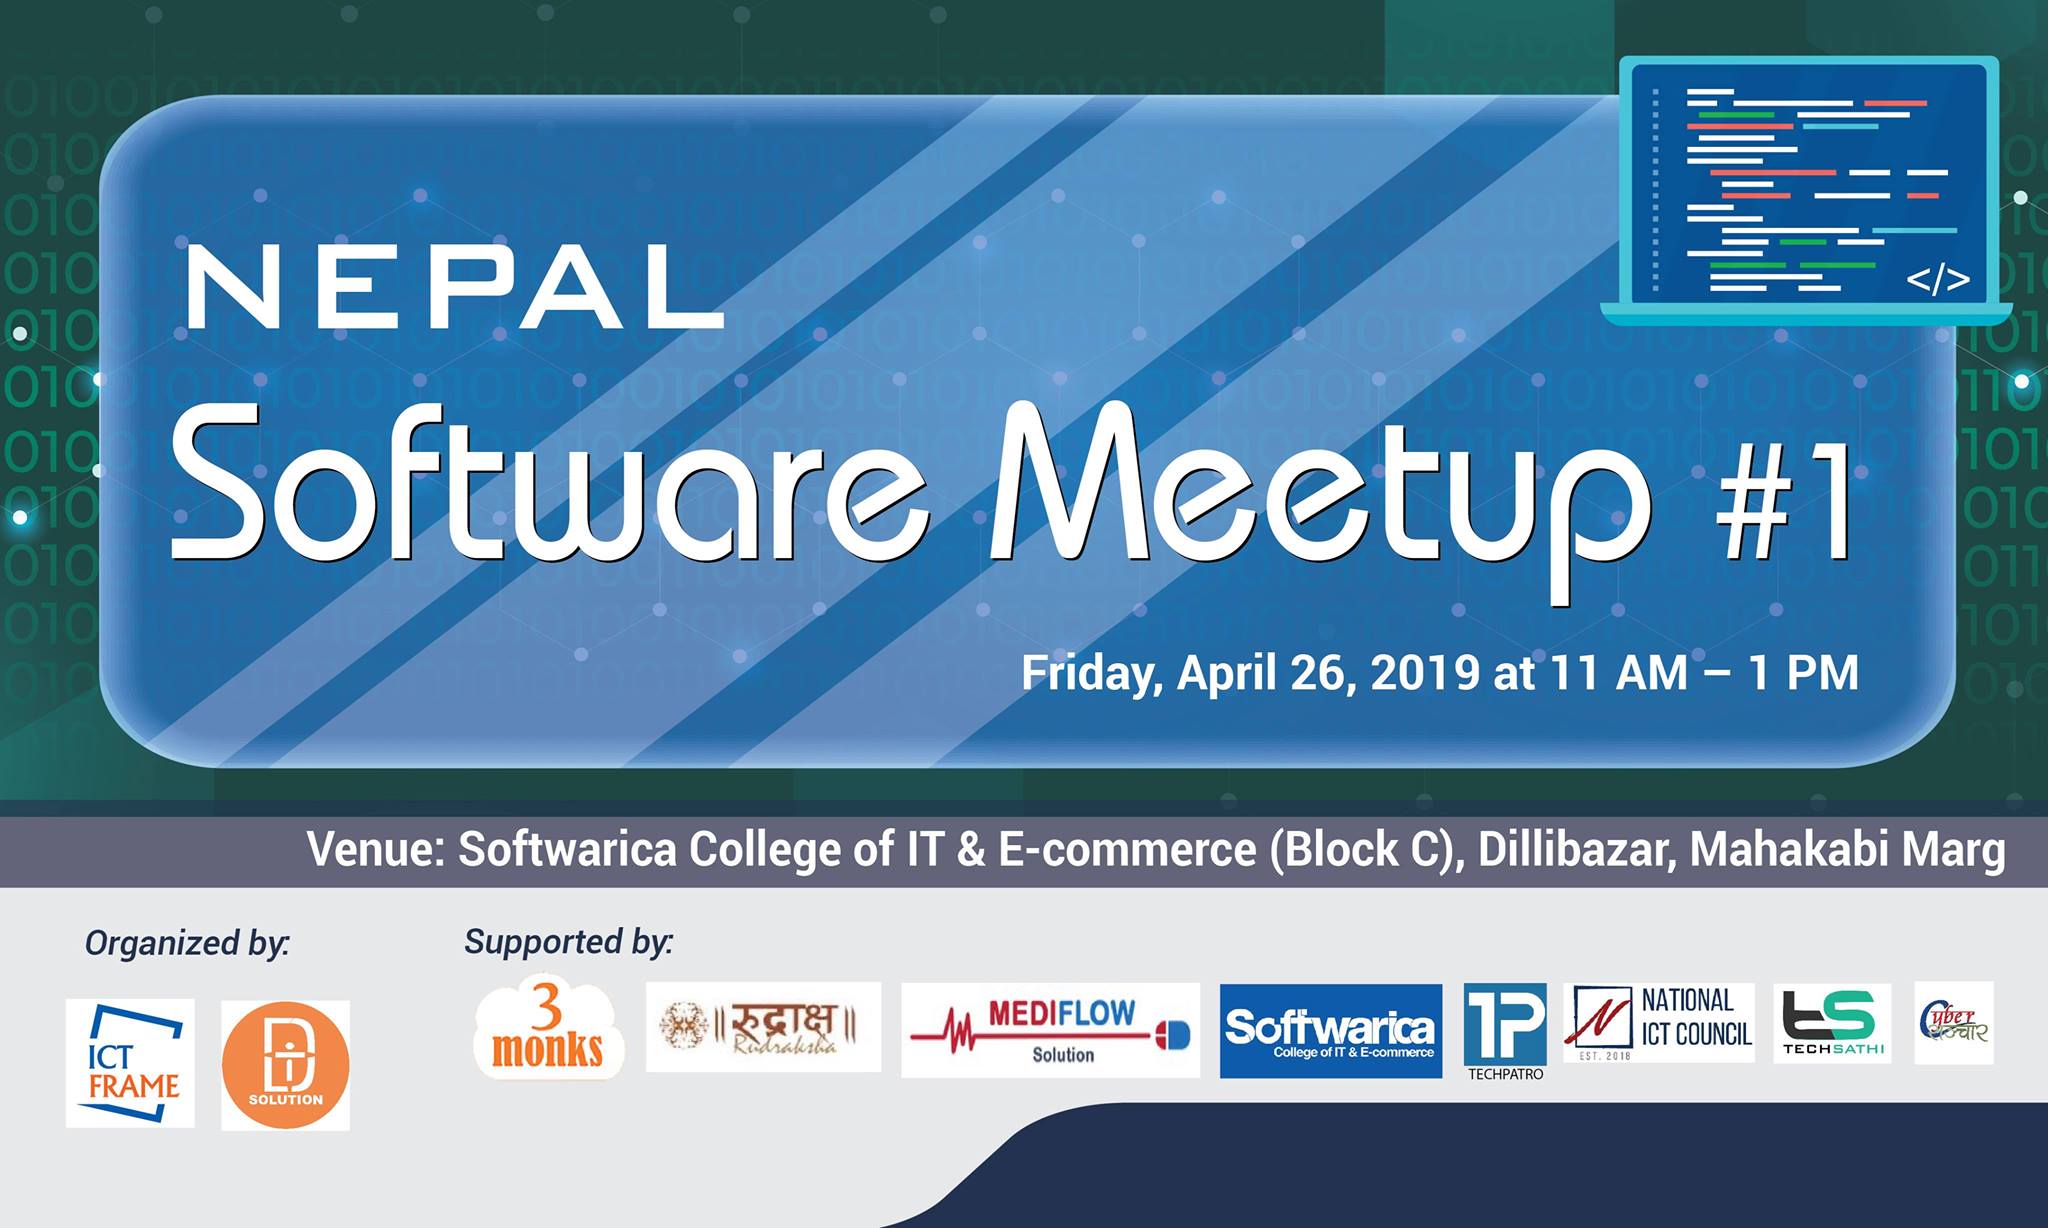 Nepal Software Meetup